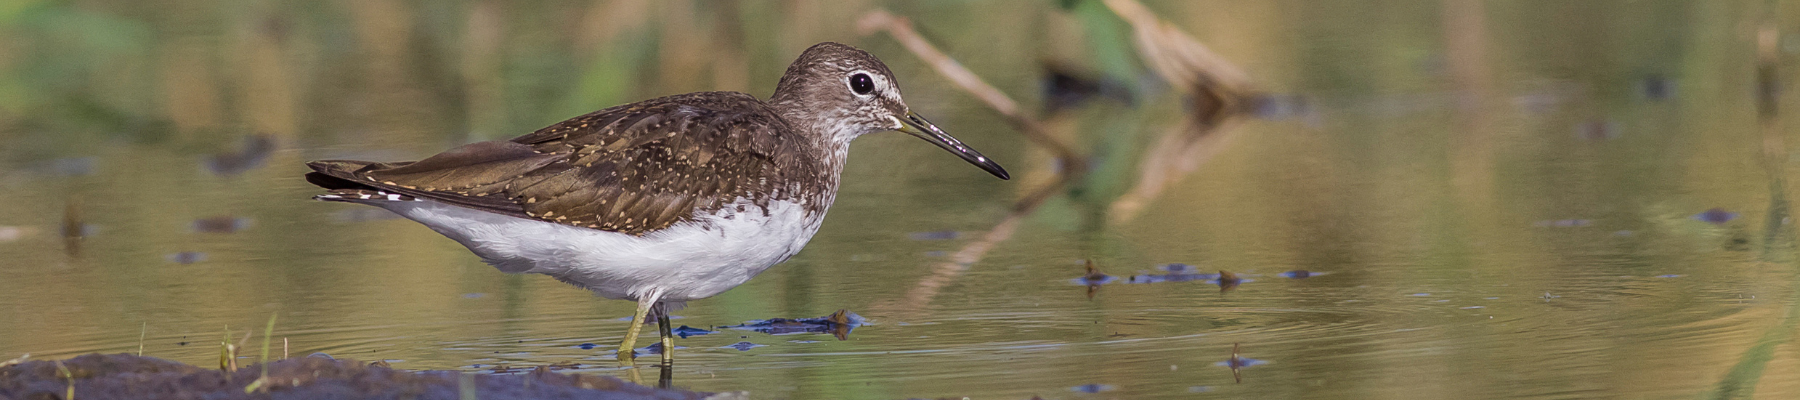 A wetland bird - Shutterstock image